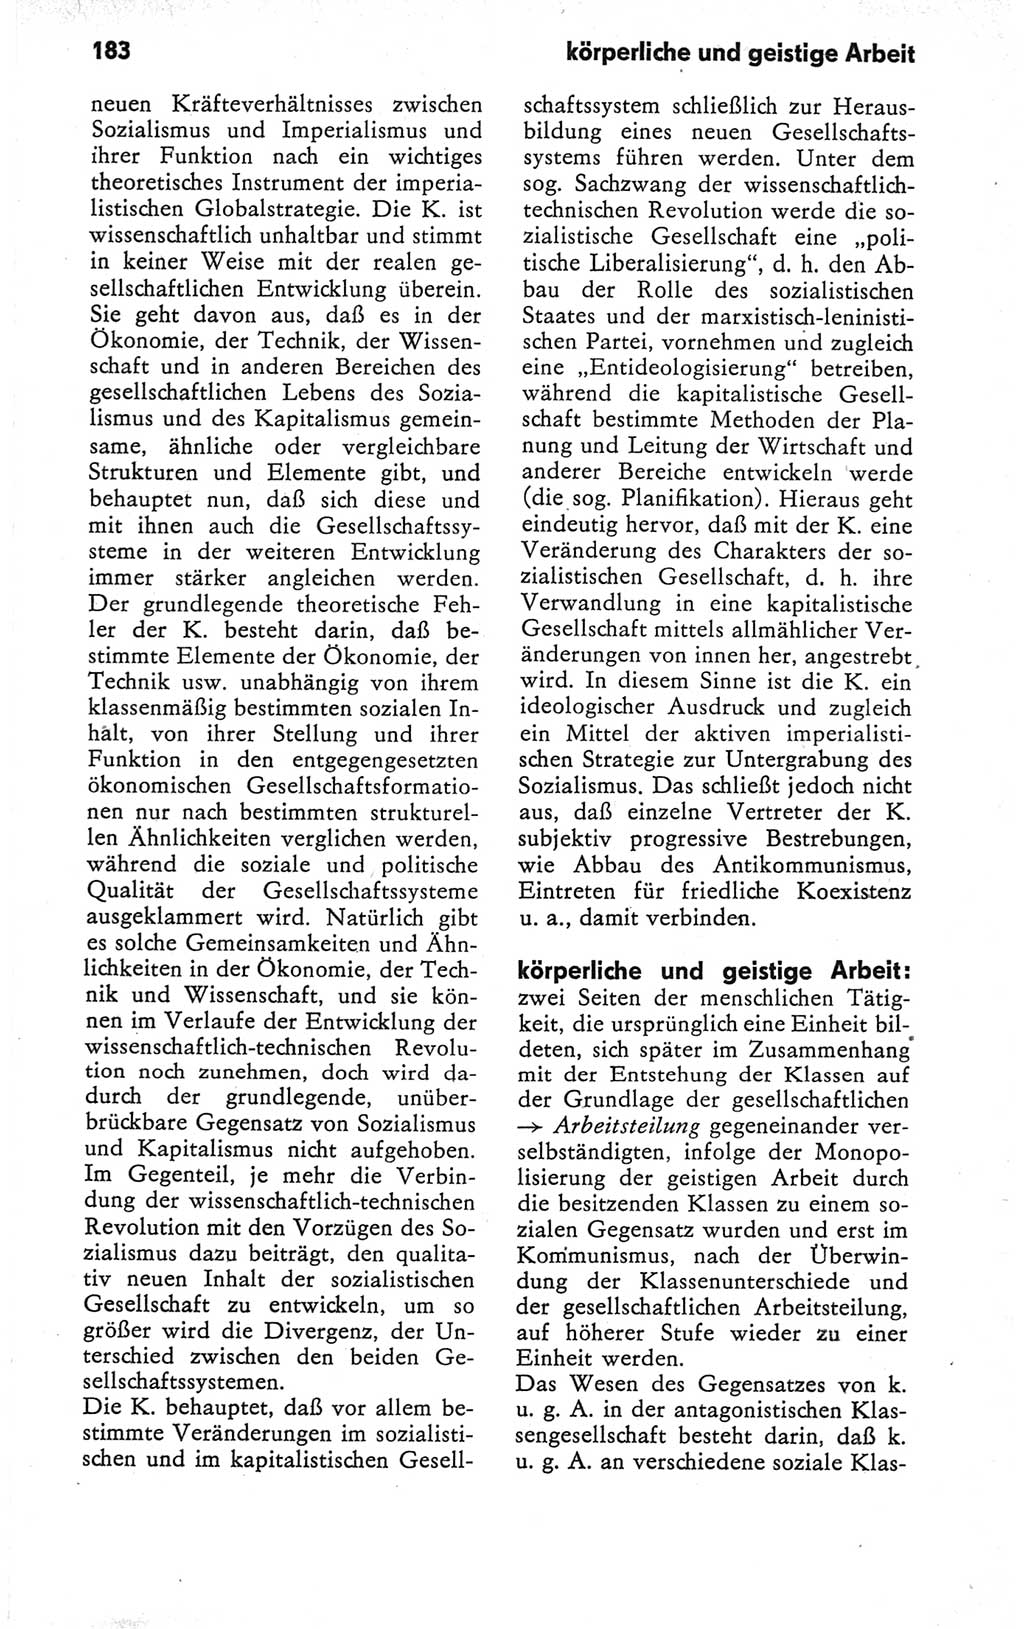 Kleines Wörterbuch der marxistisch-leninistischen Philosophie [Deutsche Demokratische Republik (DDR)] 1979, Seite 183 (Kl. Wb. ML Phil. DDR 1979, S. 183)